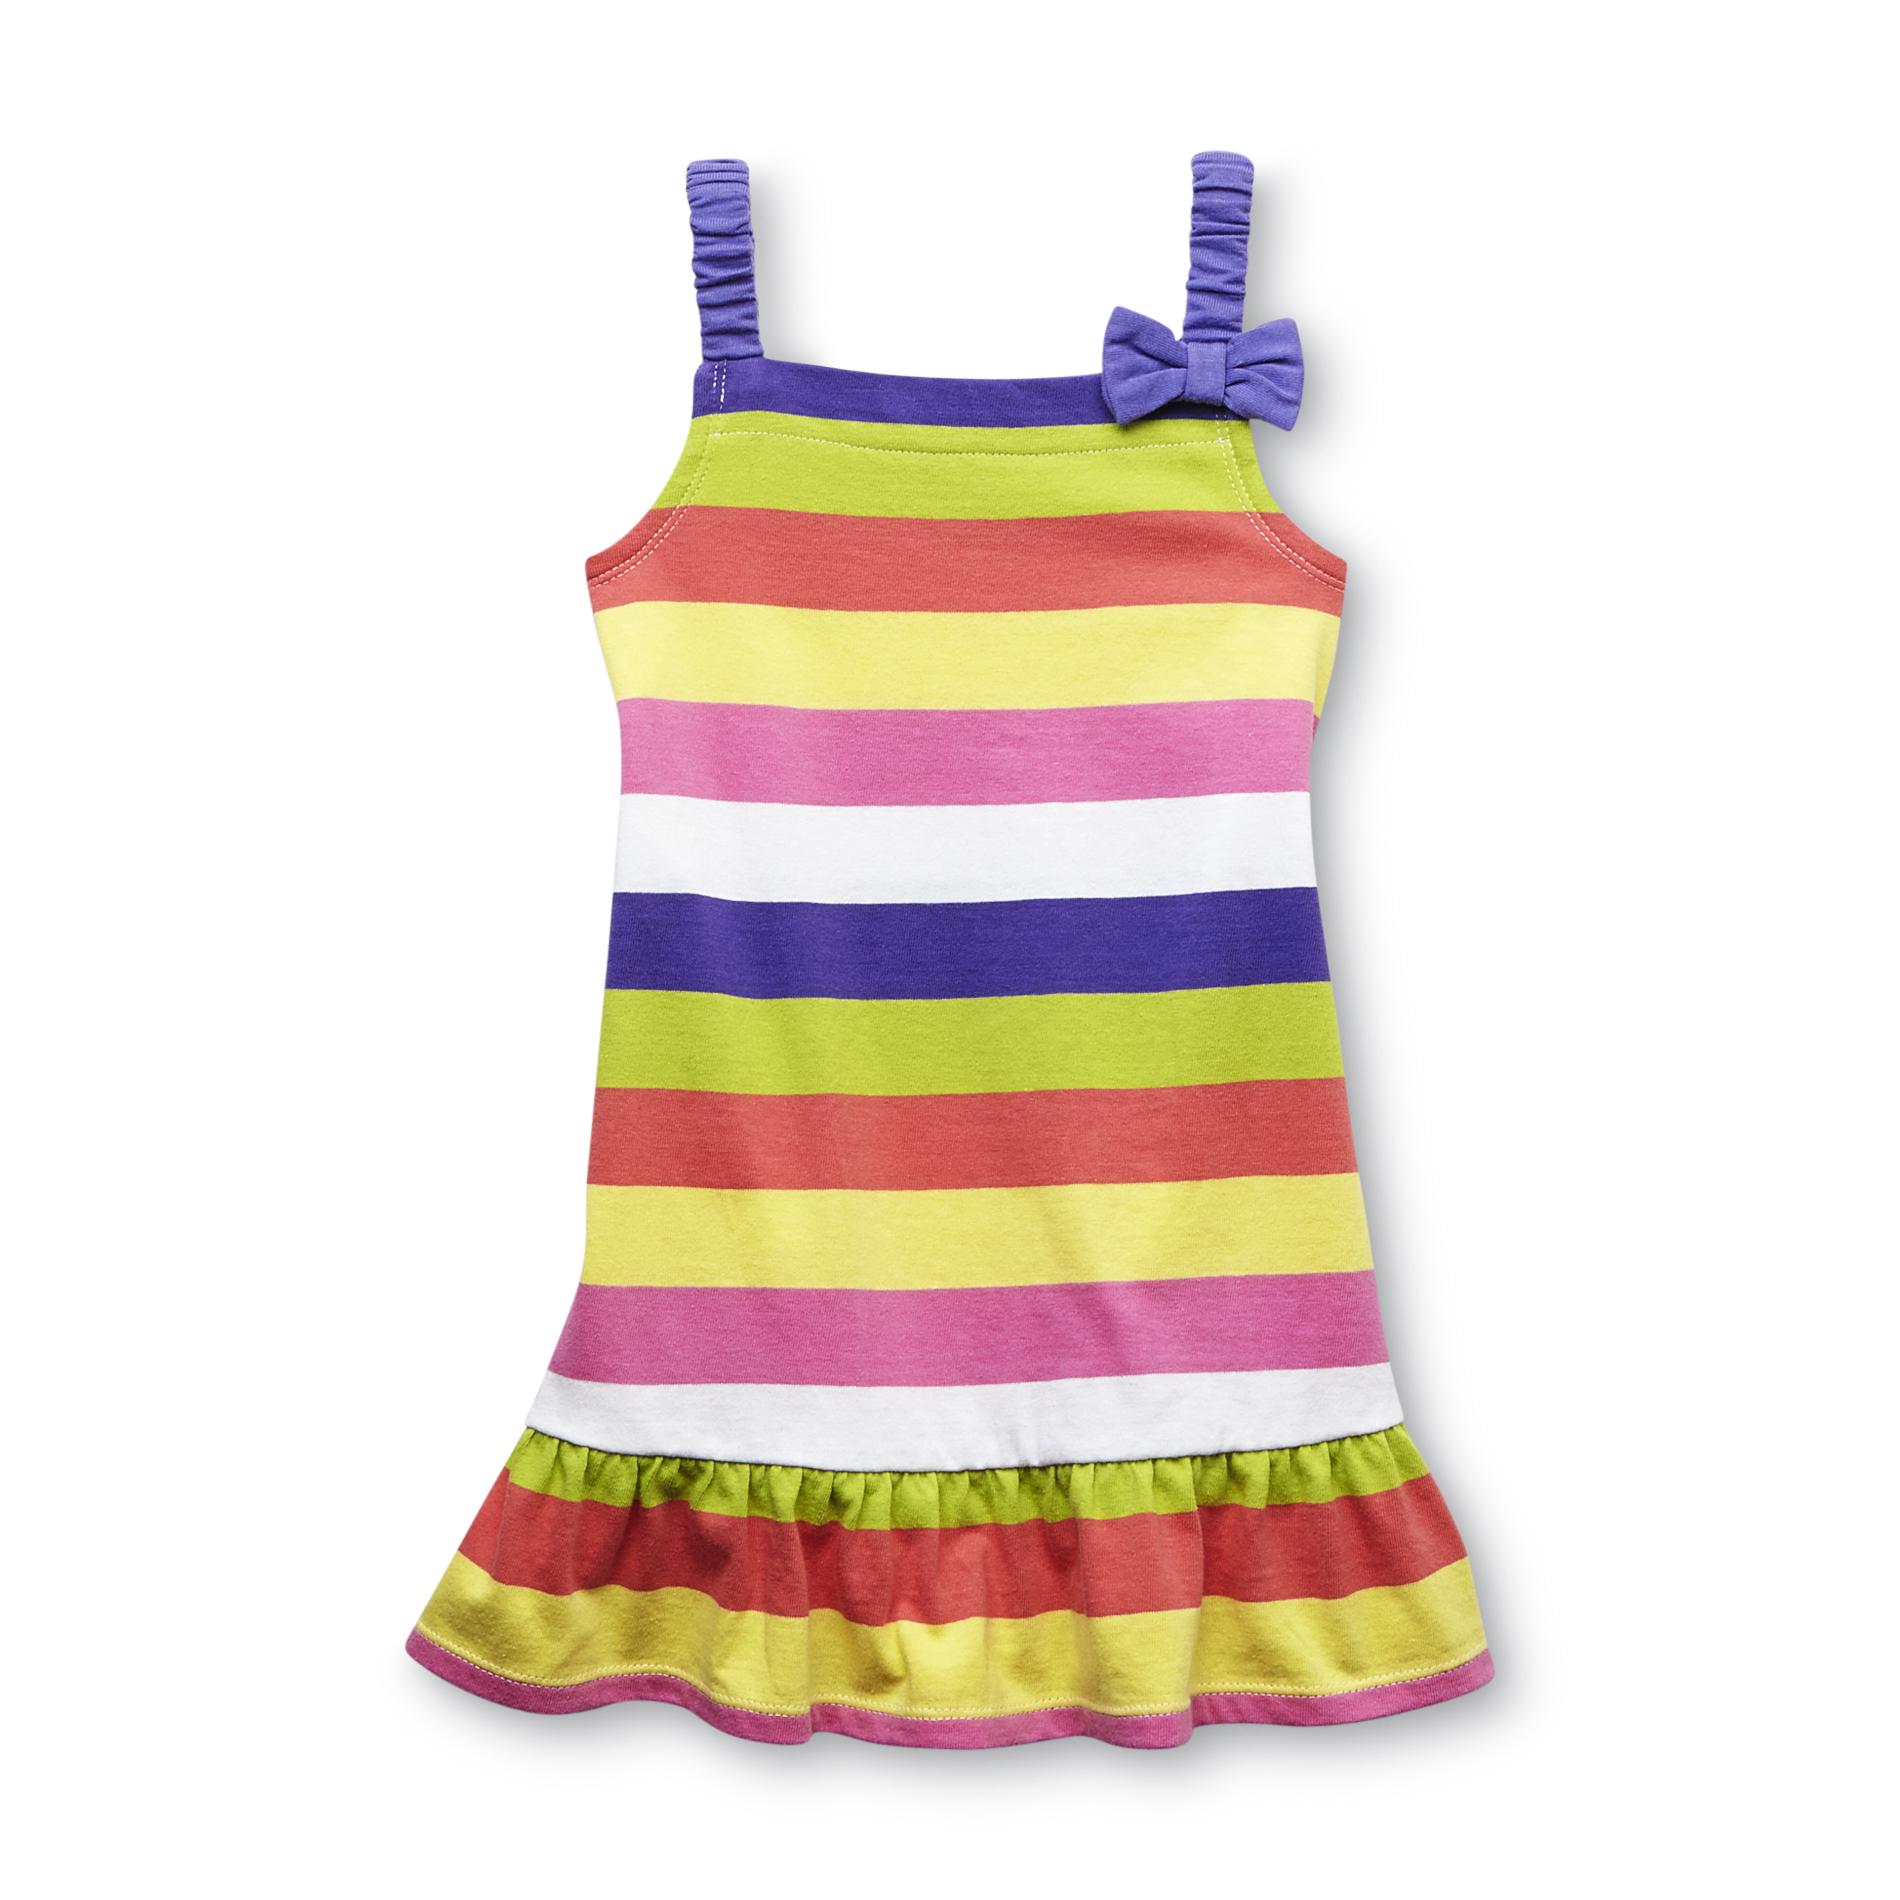 WonderKids Infant & Toddler Girl's Sleeveless Sundress - Striped